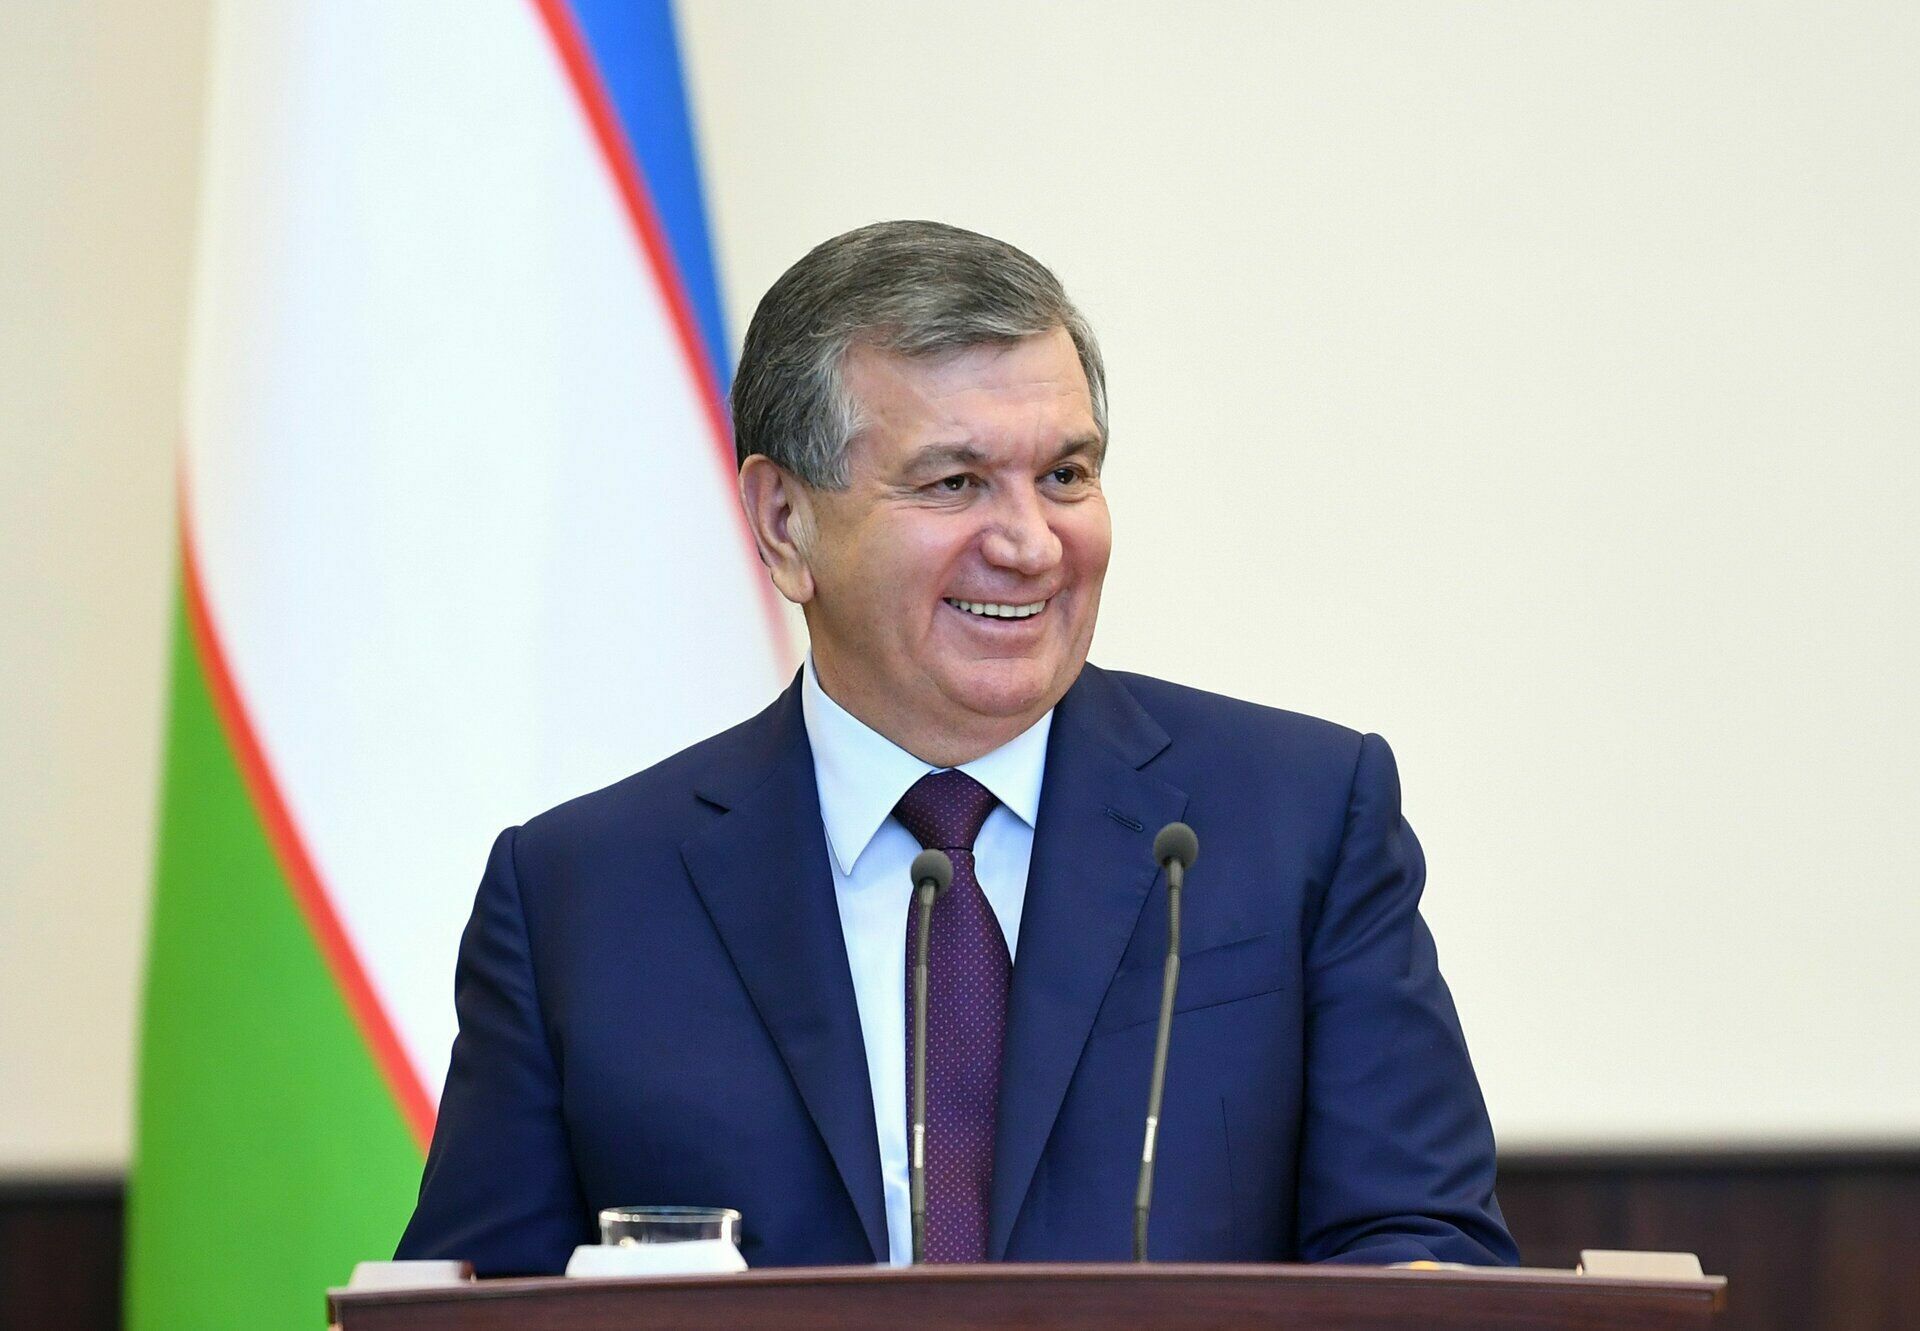 Действующий глава Узбекистана переизбран в результатом в более 80% голосов